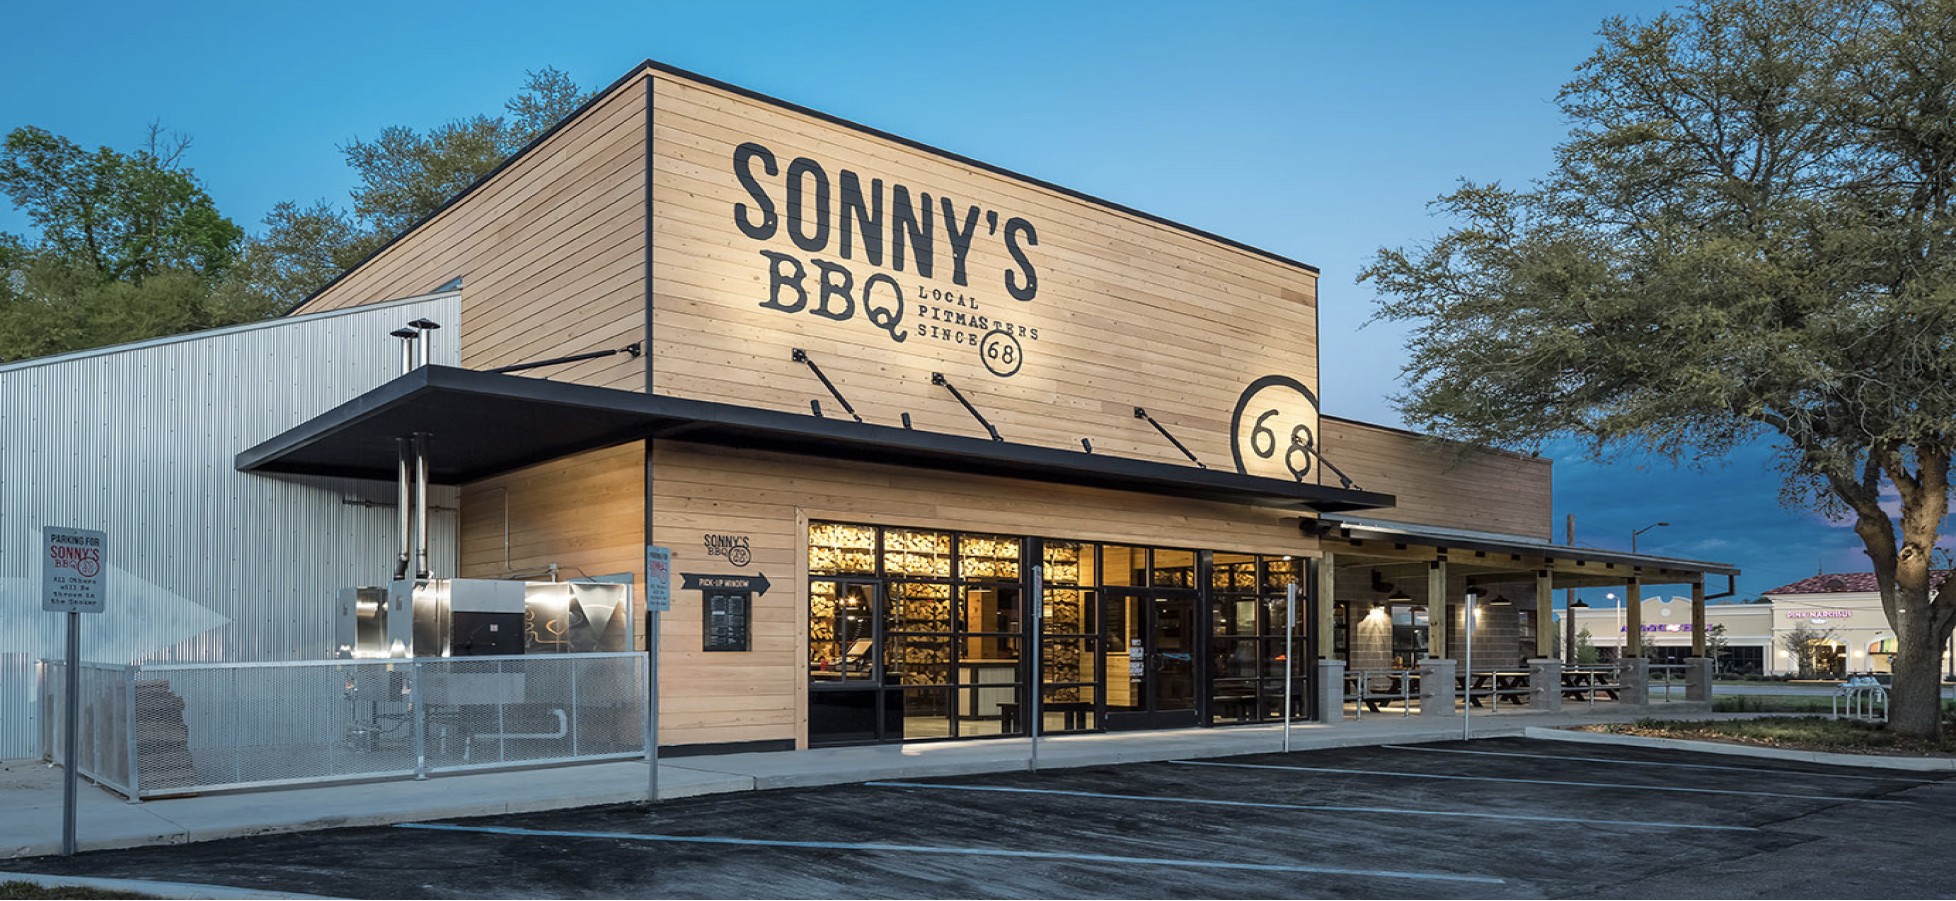 Sonny's storefront at dusk